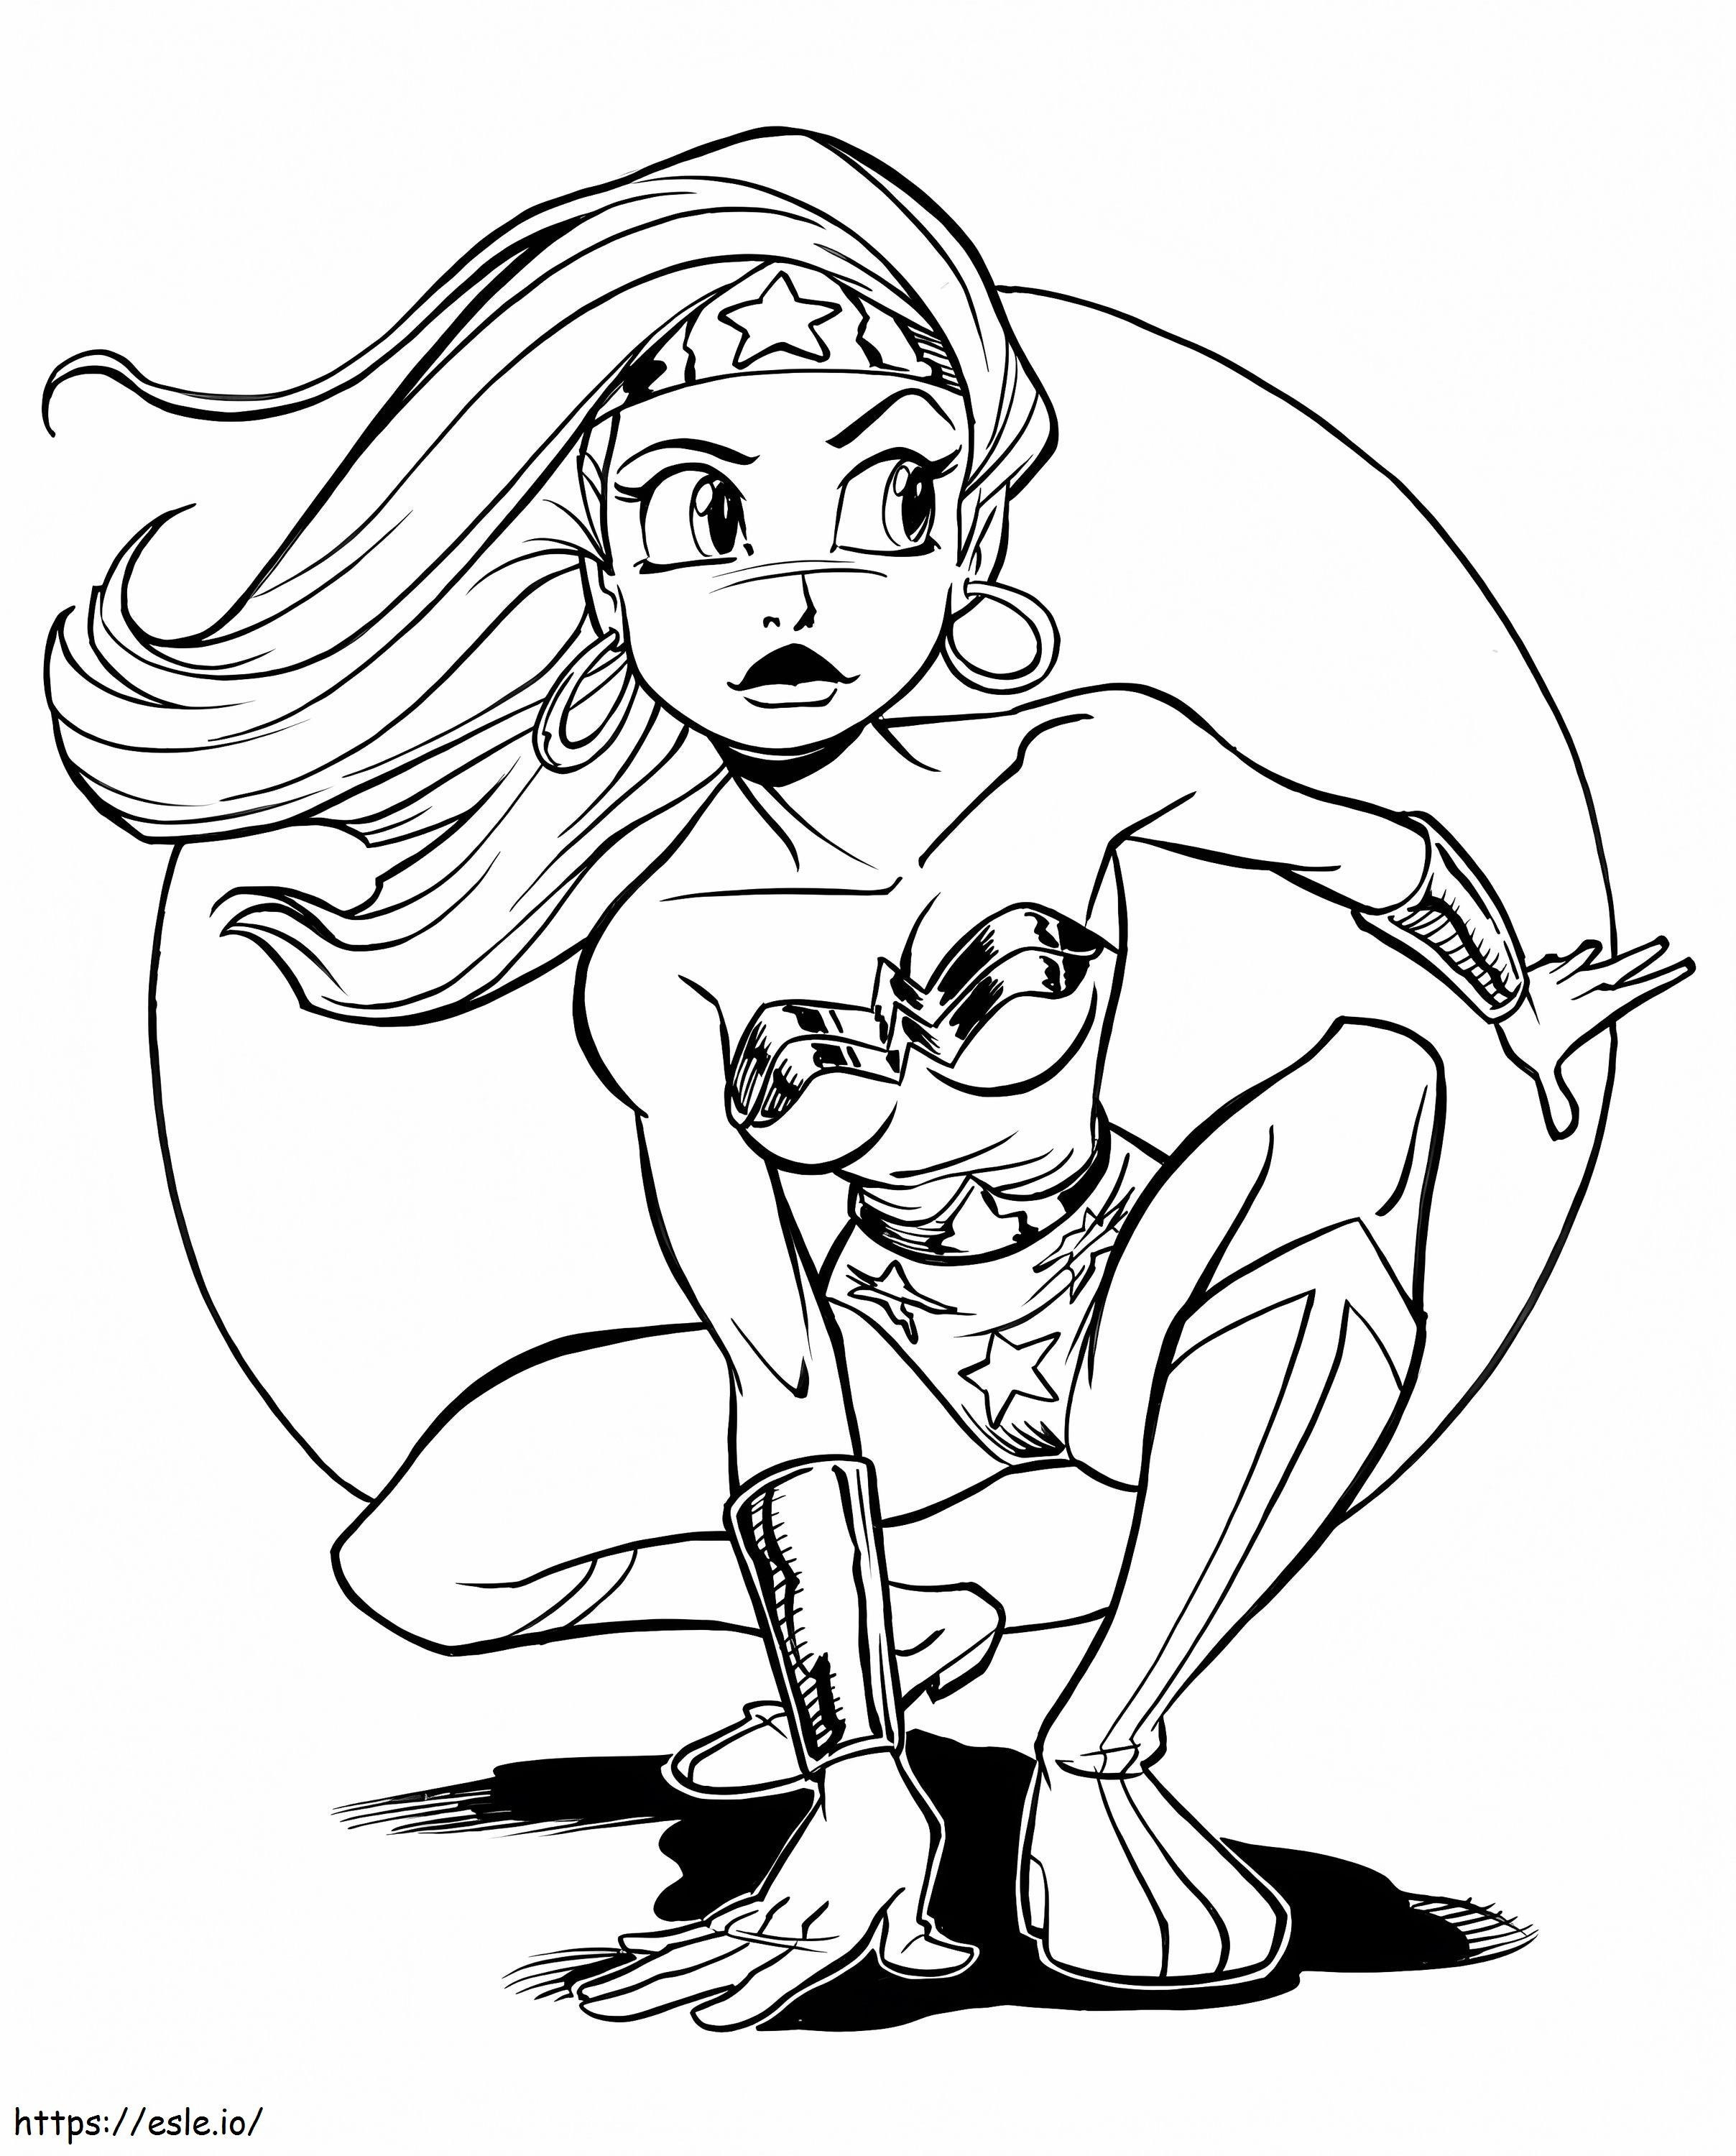 Coloriage 1551355414 Finale du squat de Wonder Woman par Tombancroft D6Rkht4 à imprimer dessin